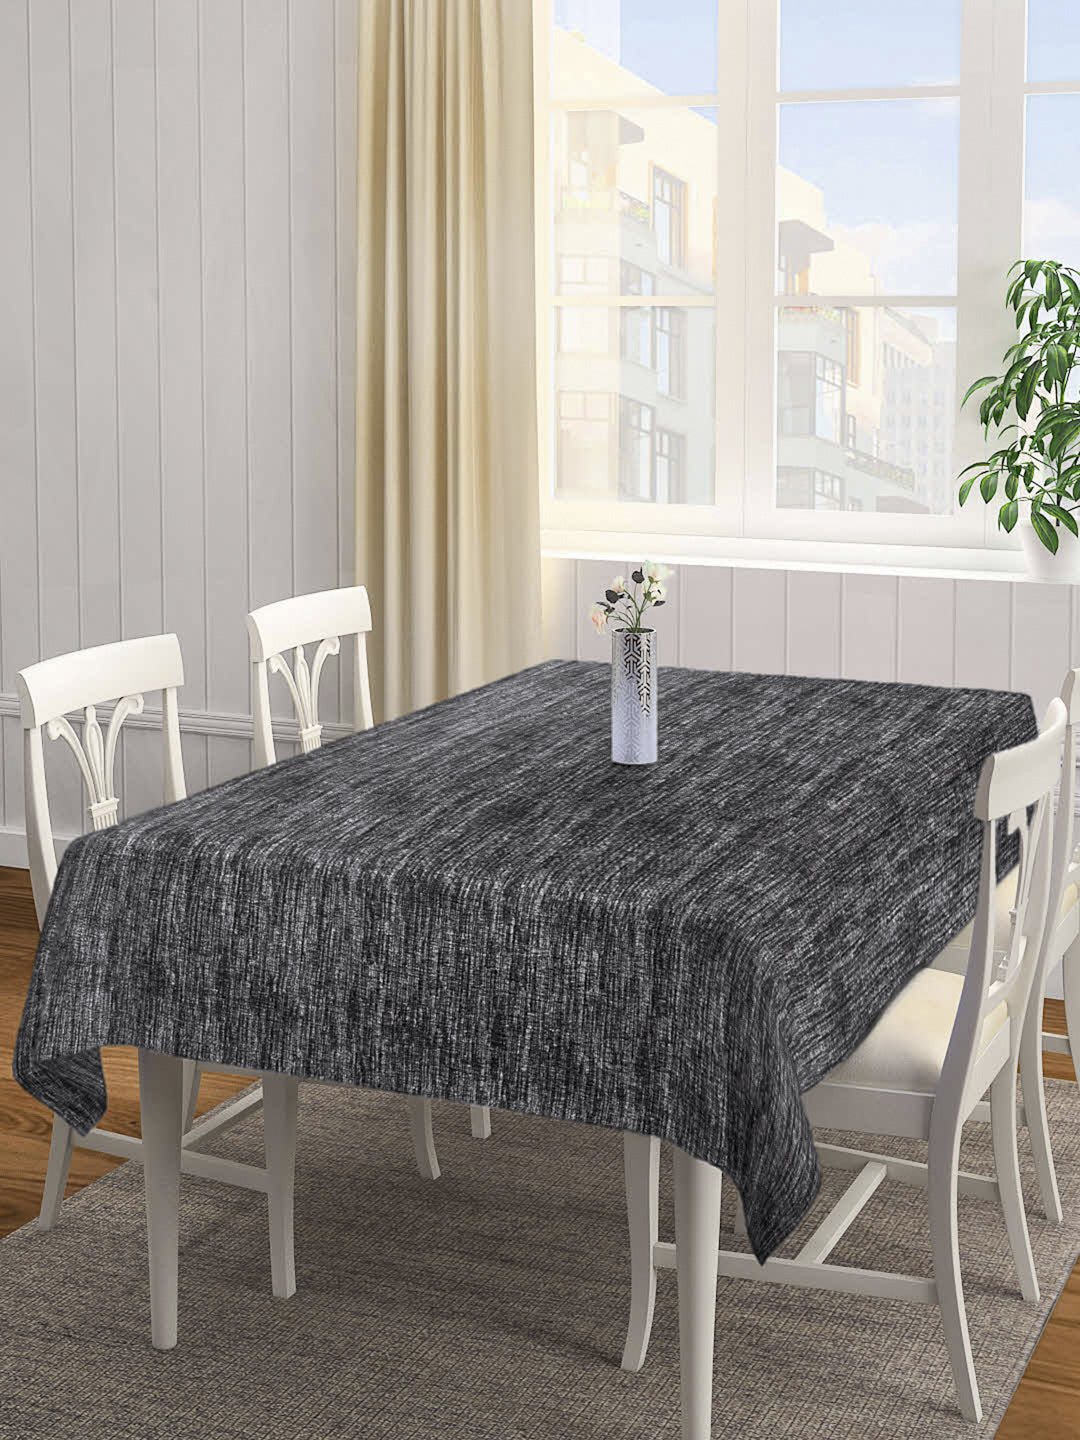 Klotthe Black Woven Design 6 Seater Rectangular Table Cover